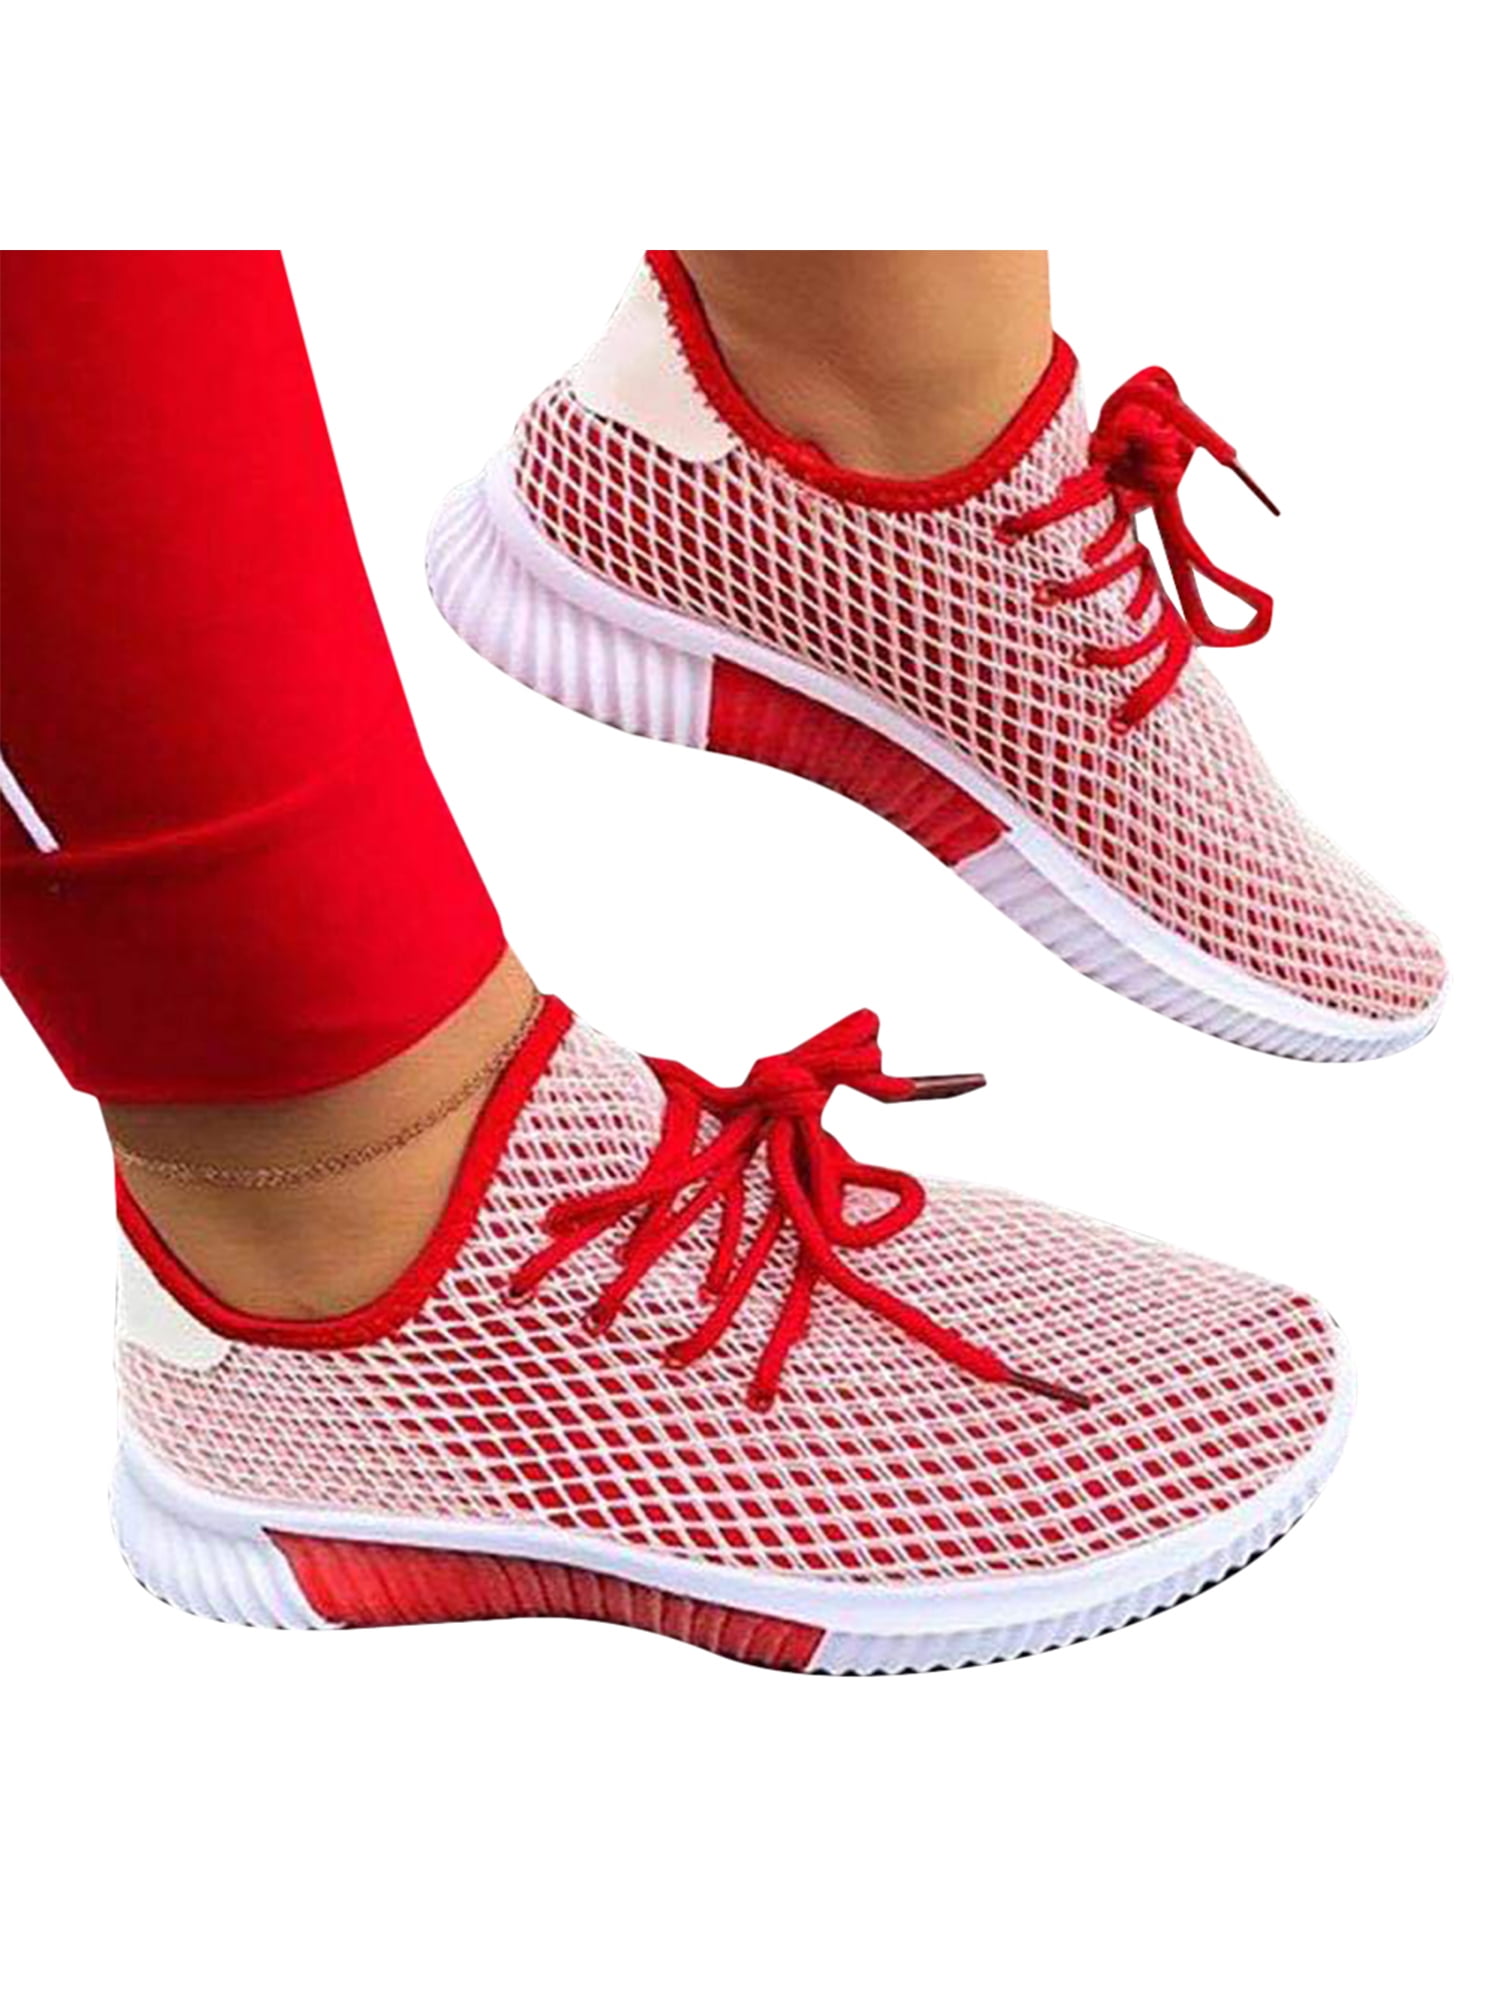 Sneaker Women Lace-up Casual Sport Fashion Walking Flats Mesh Running Shoes